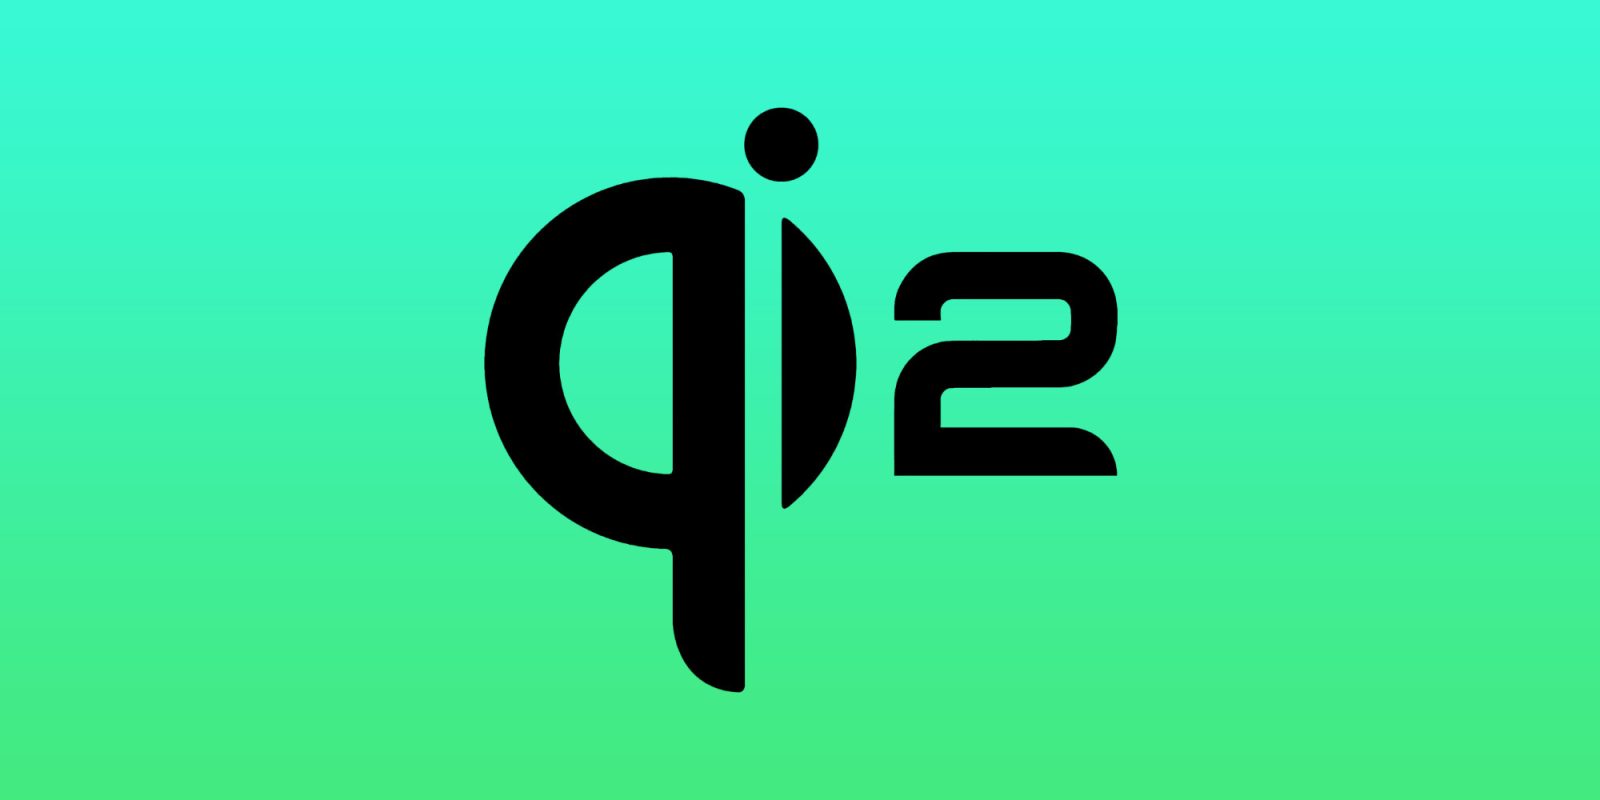 Wireless Power Consortium travaille avec Apple sur la norme « Qi2 » de nouvelle génération basée sur MagSafe